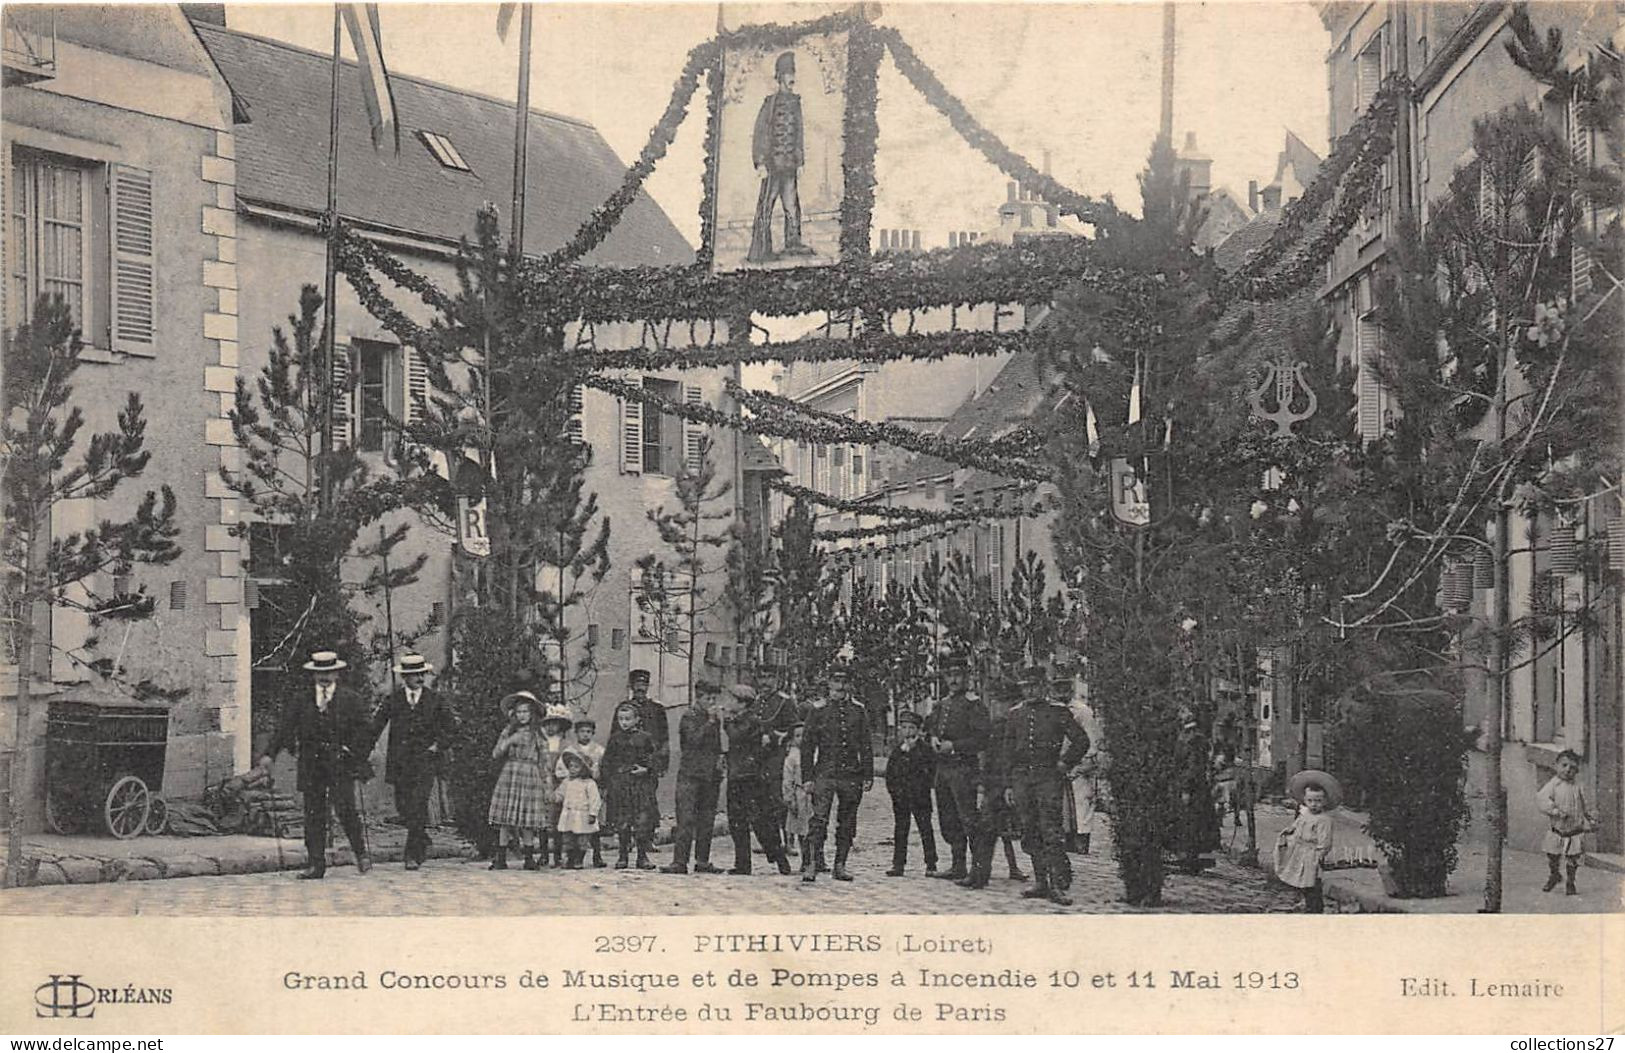 45-PITHIVIER- GRAND CONCOURS DE MUSIQUE ET DE POMPES A INCENDIE 10 ET 11 MAI 1913, L'ENTRRE DU FAUBOURG DE PARIS - Pithiviers